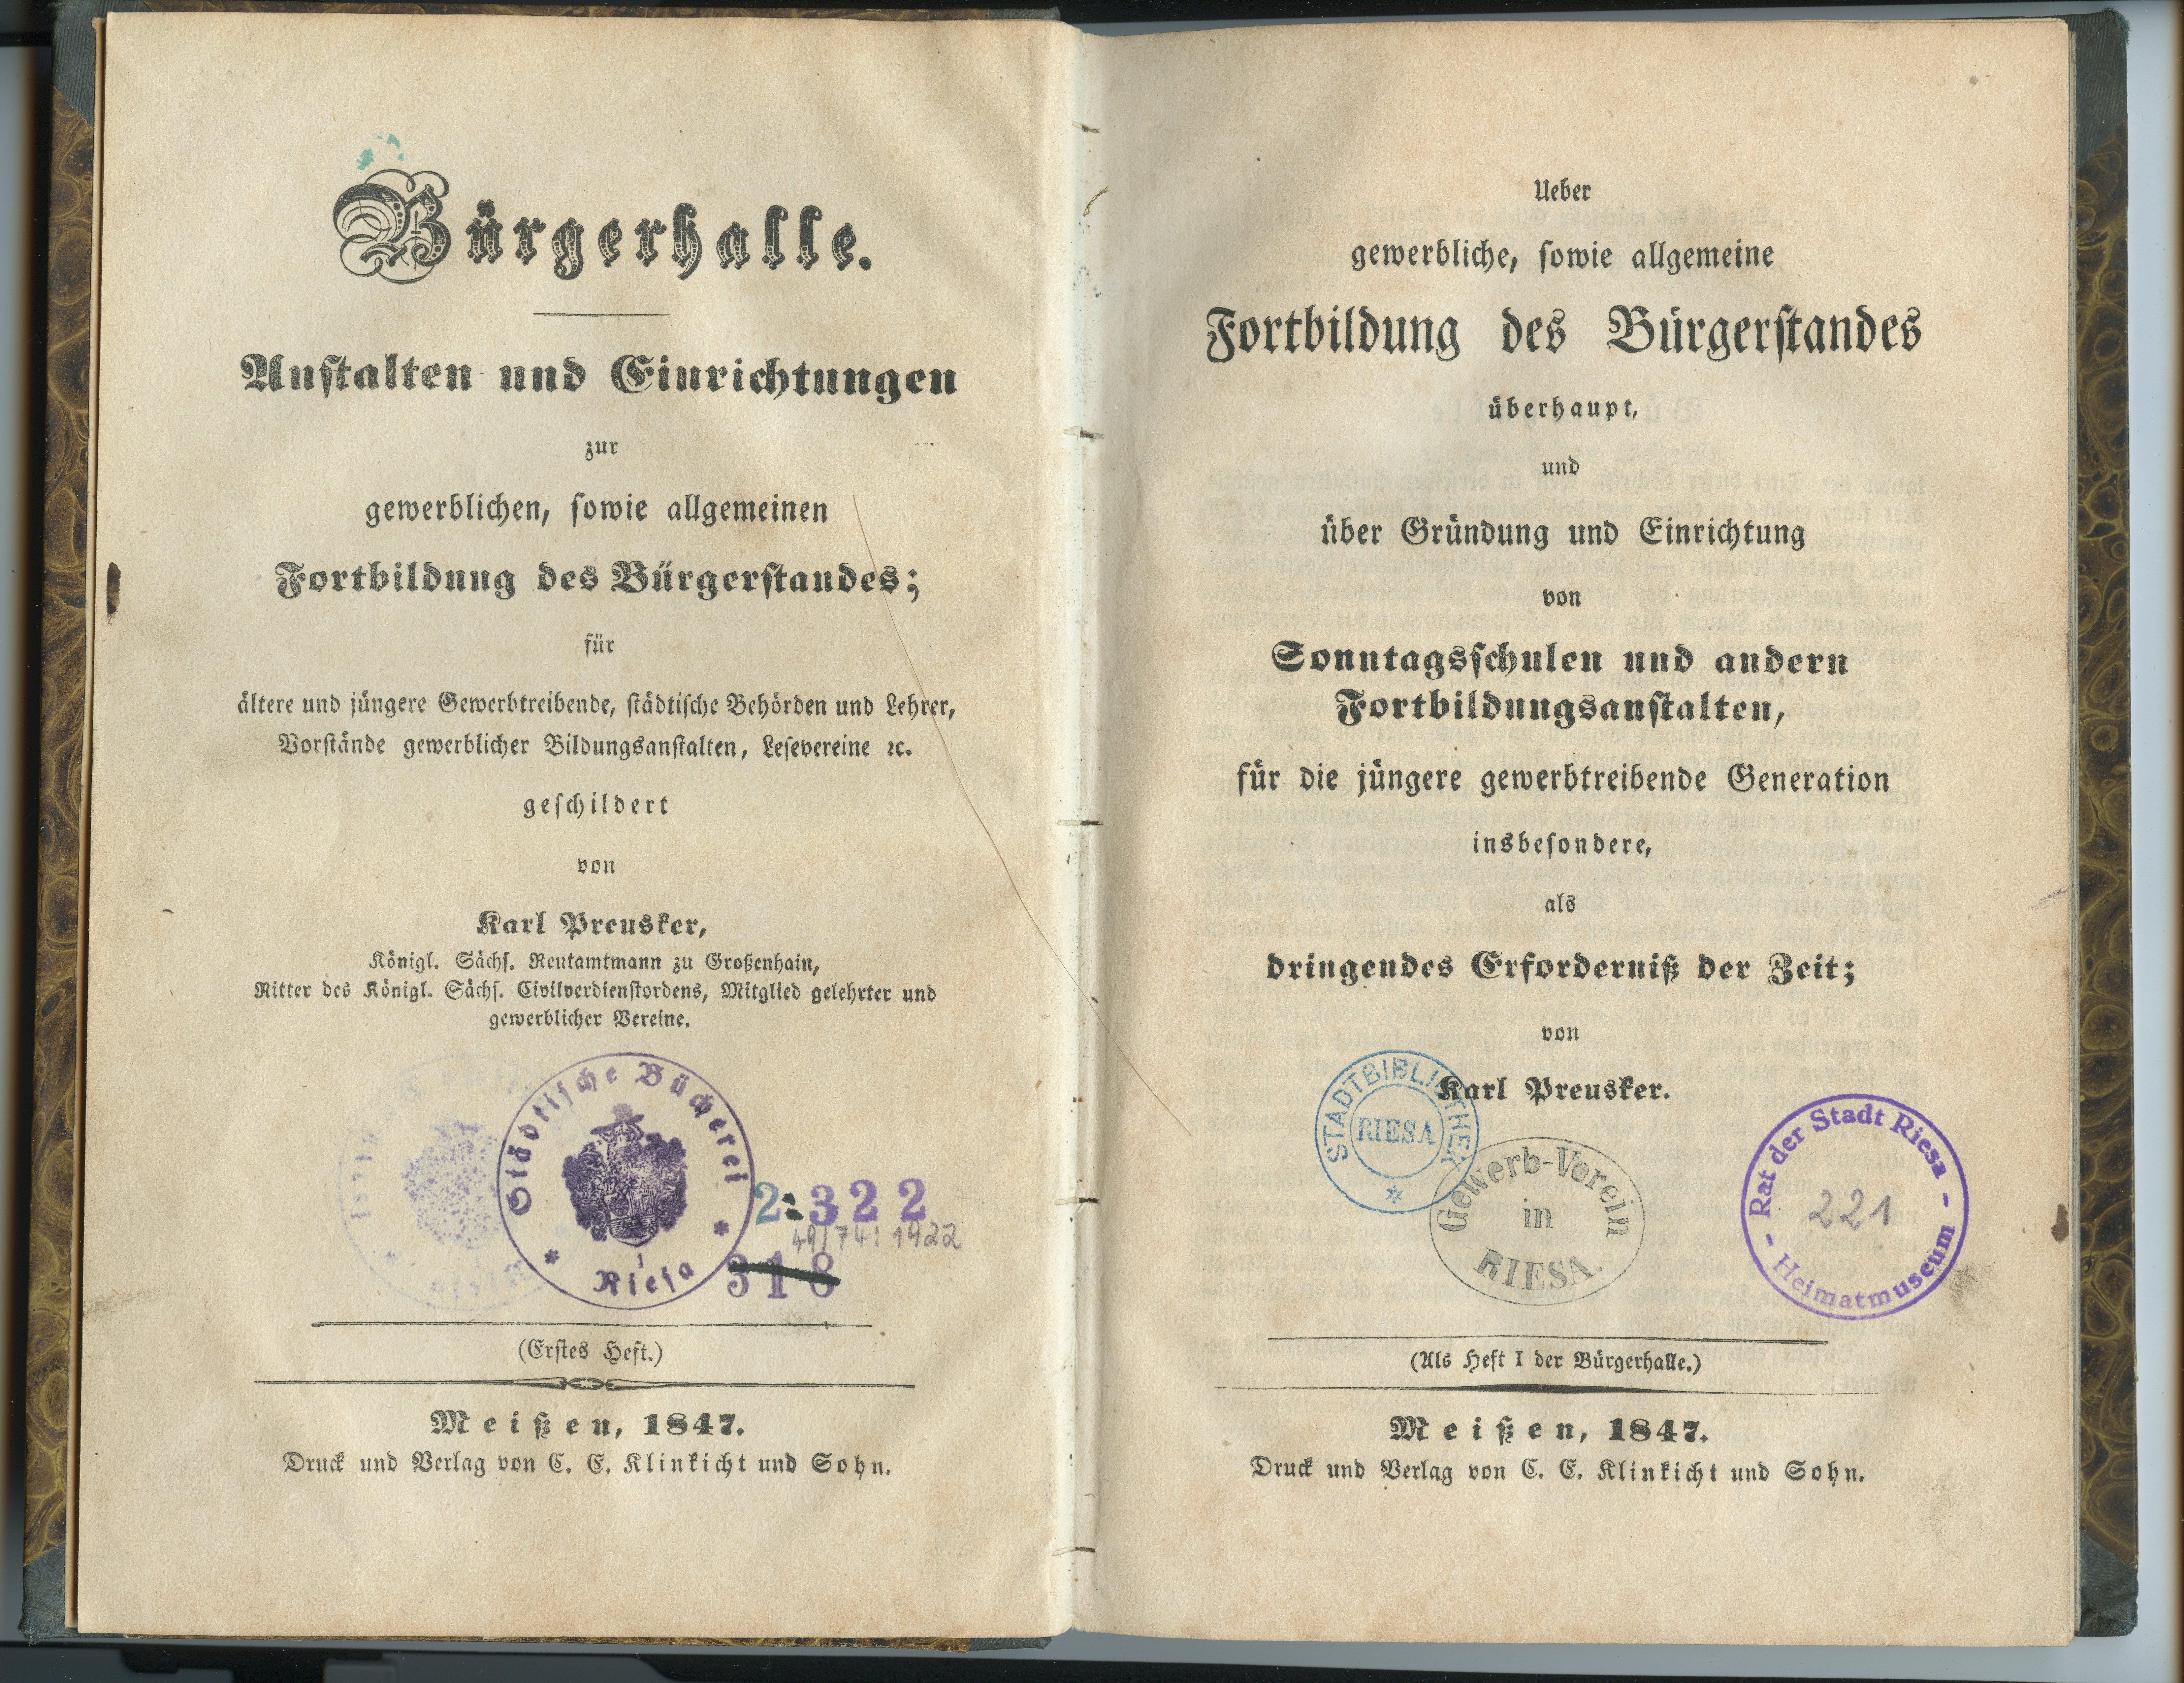 Preusker, Karl: Ueber die gewerbliche, sowie allgemeine Fortbildung des Bürgerstandes überhaupt [...], 1847 (Museum Alte Lateinschule CC BY-NC-SA)